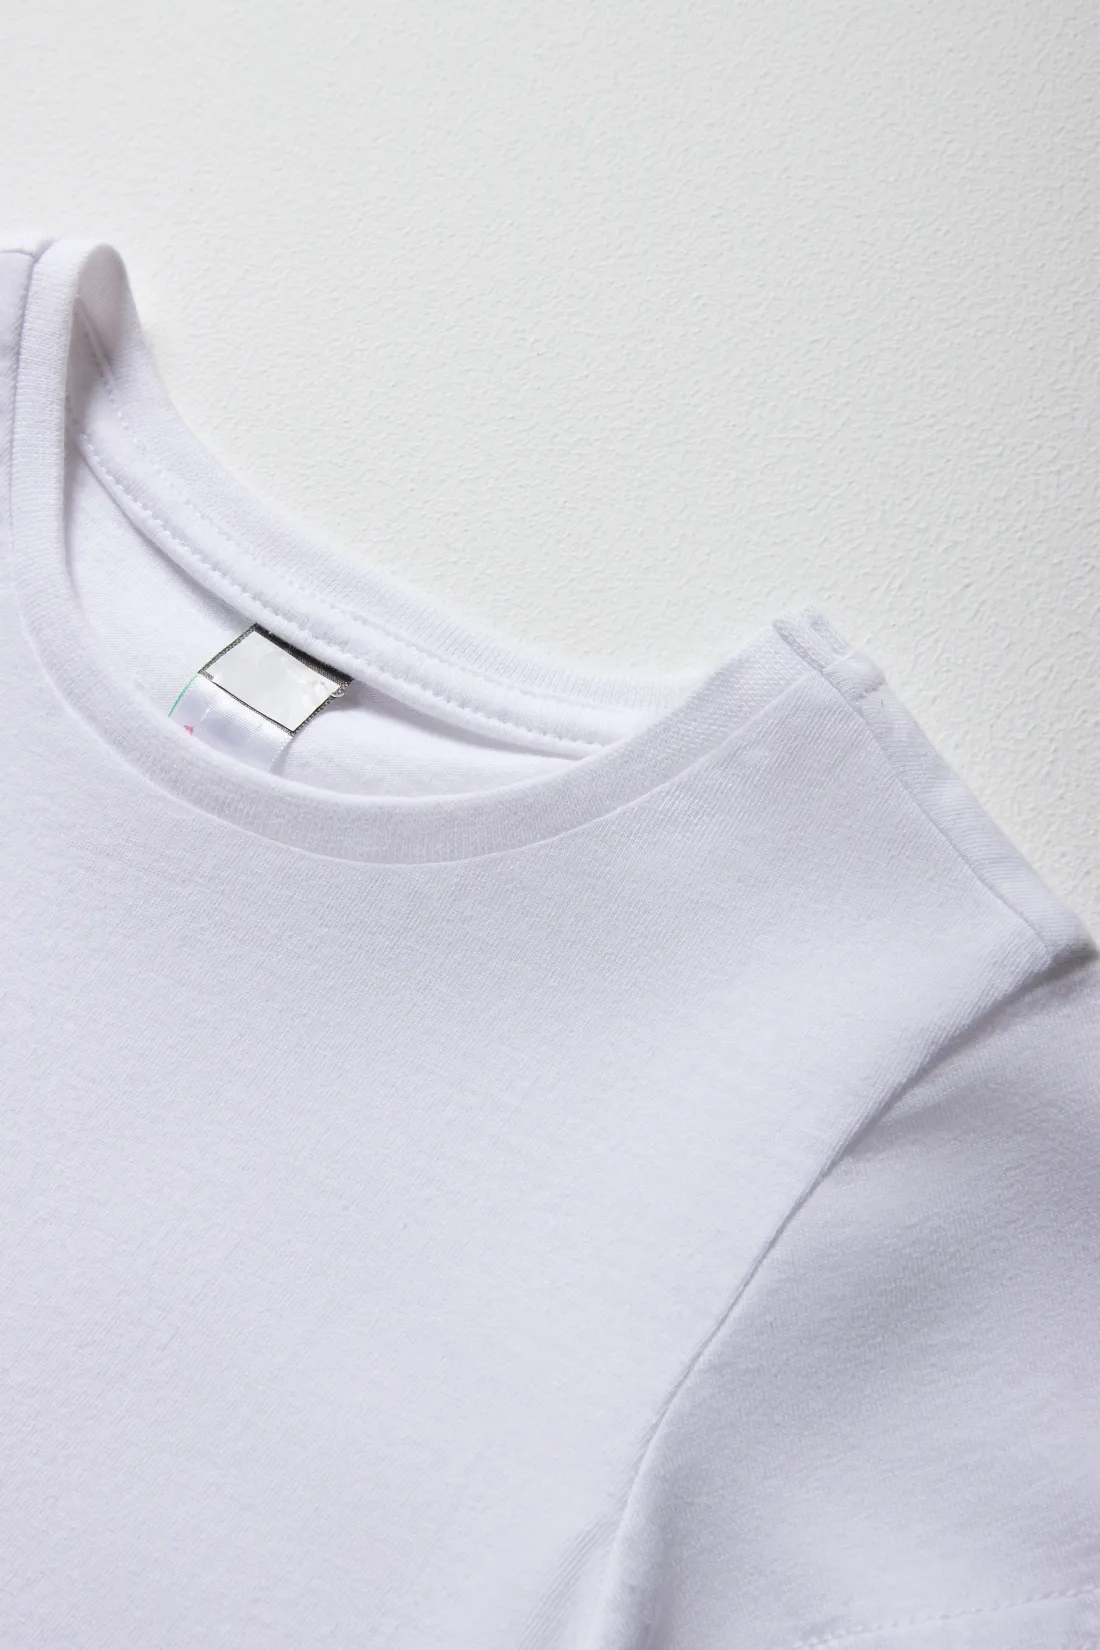 Basic t-shirt white - GIRLS 2-8 YEARS Tops & T-Shirts | Ackermans